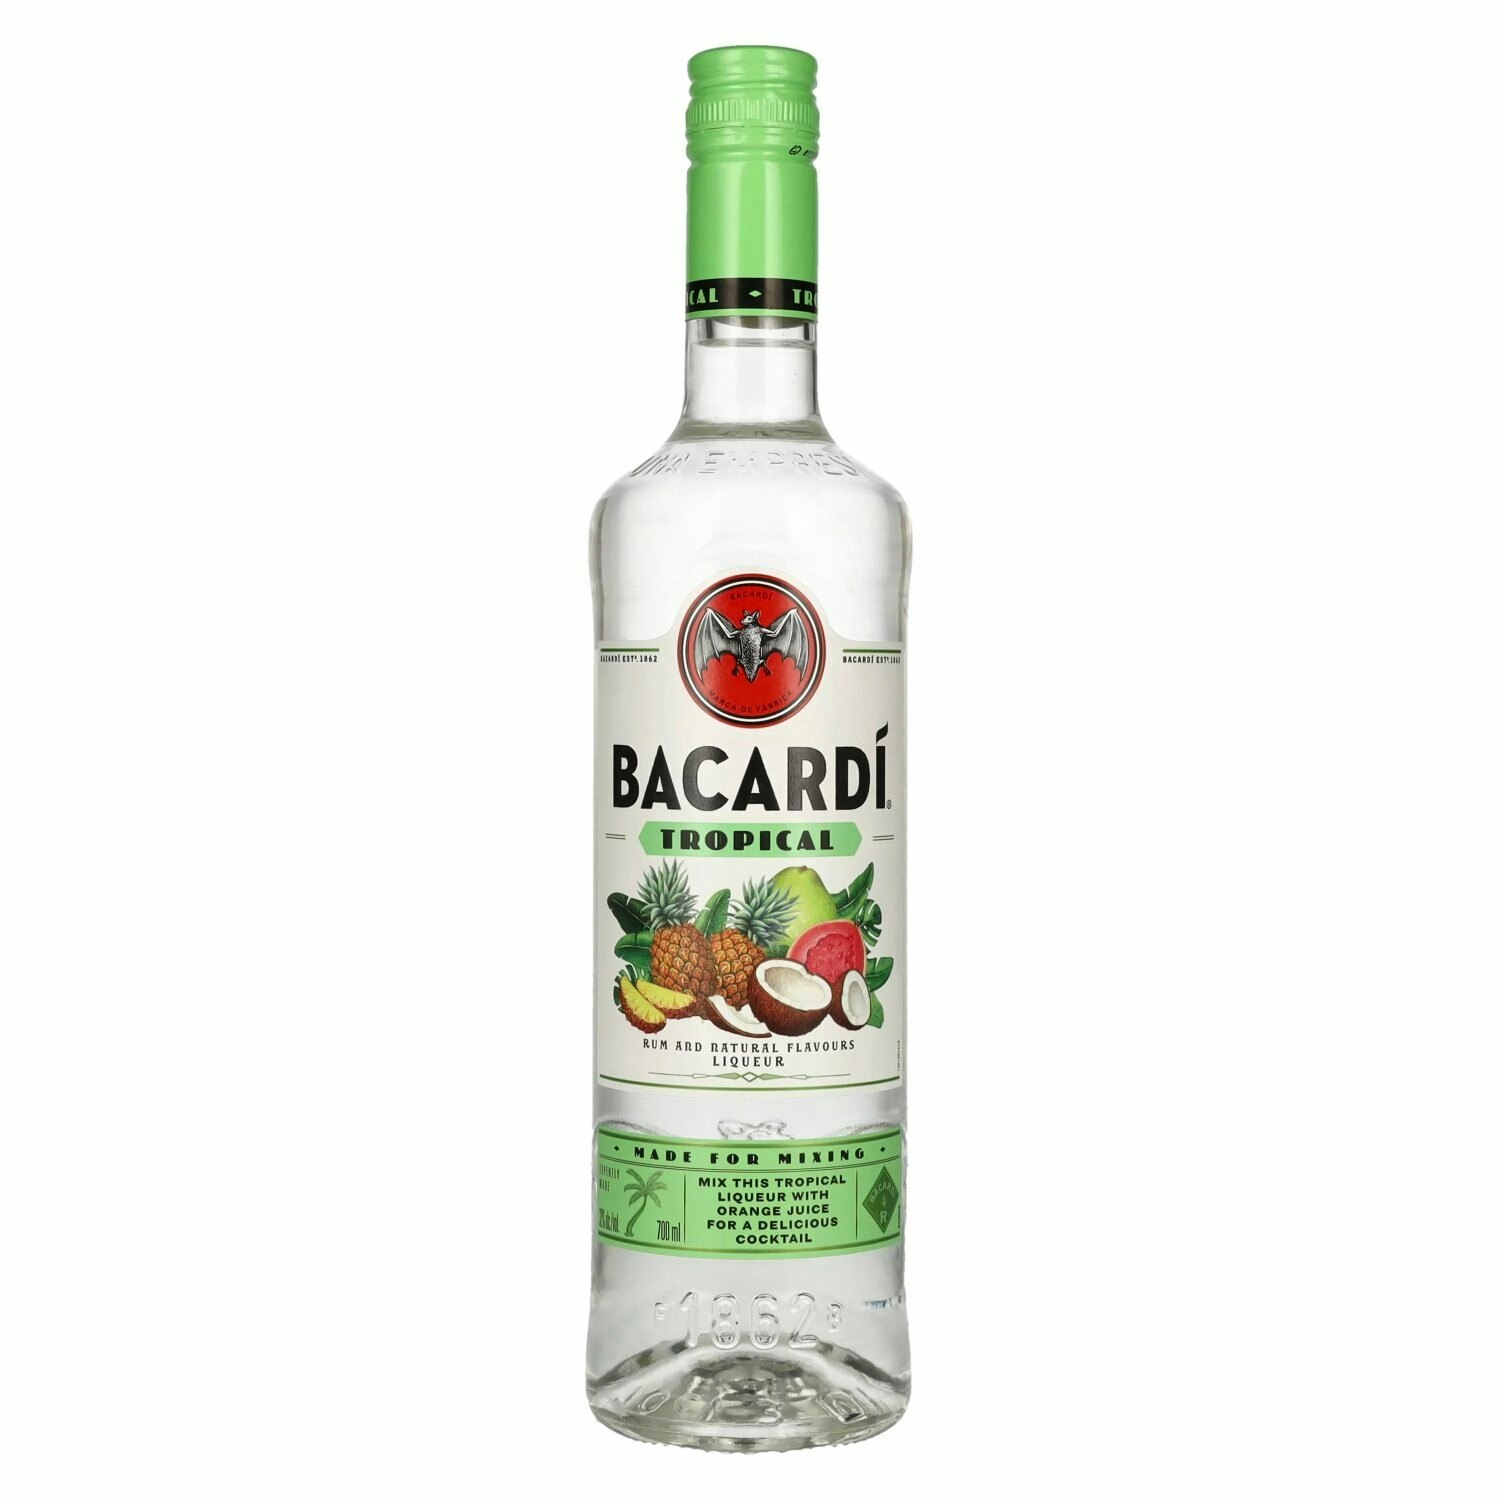 Bacardi TROPICAL Rum And Natural Flavors Liqueur 32% Vol. 0,7l